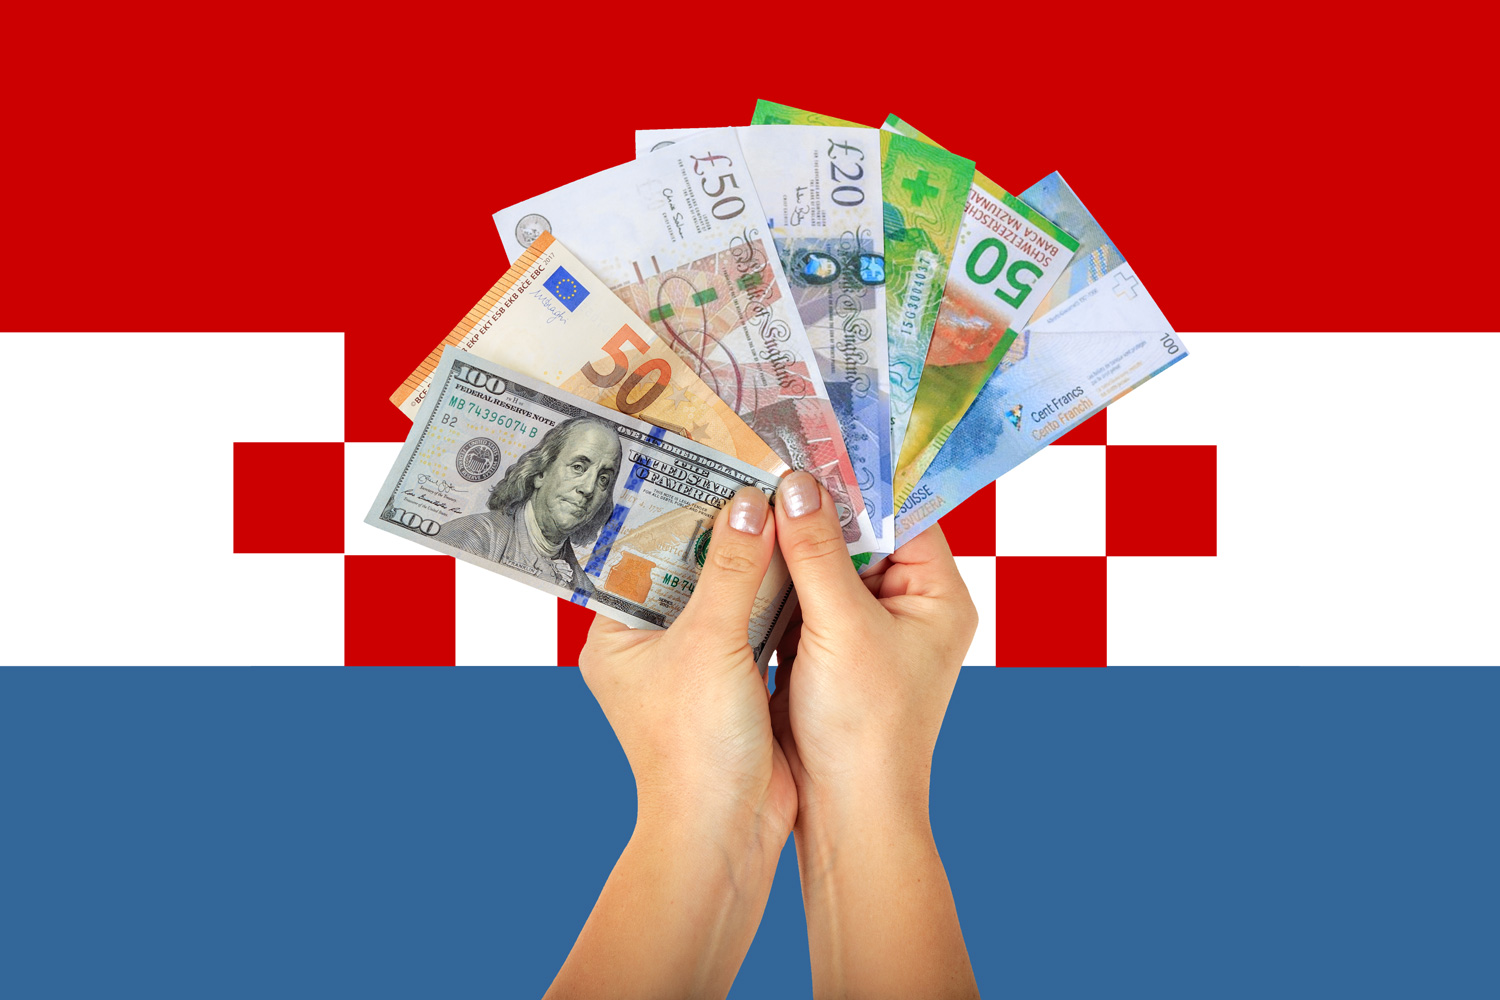 Ovo je nova službena zastava hrvatske dijaspore, tj. hrvatskog izvandomovinstva